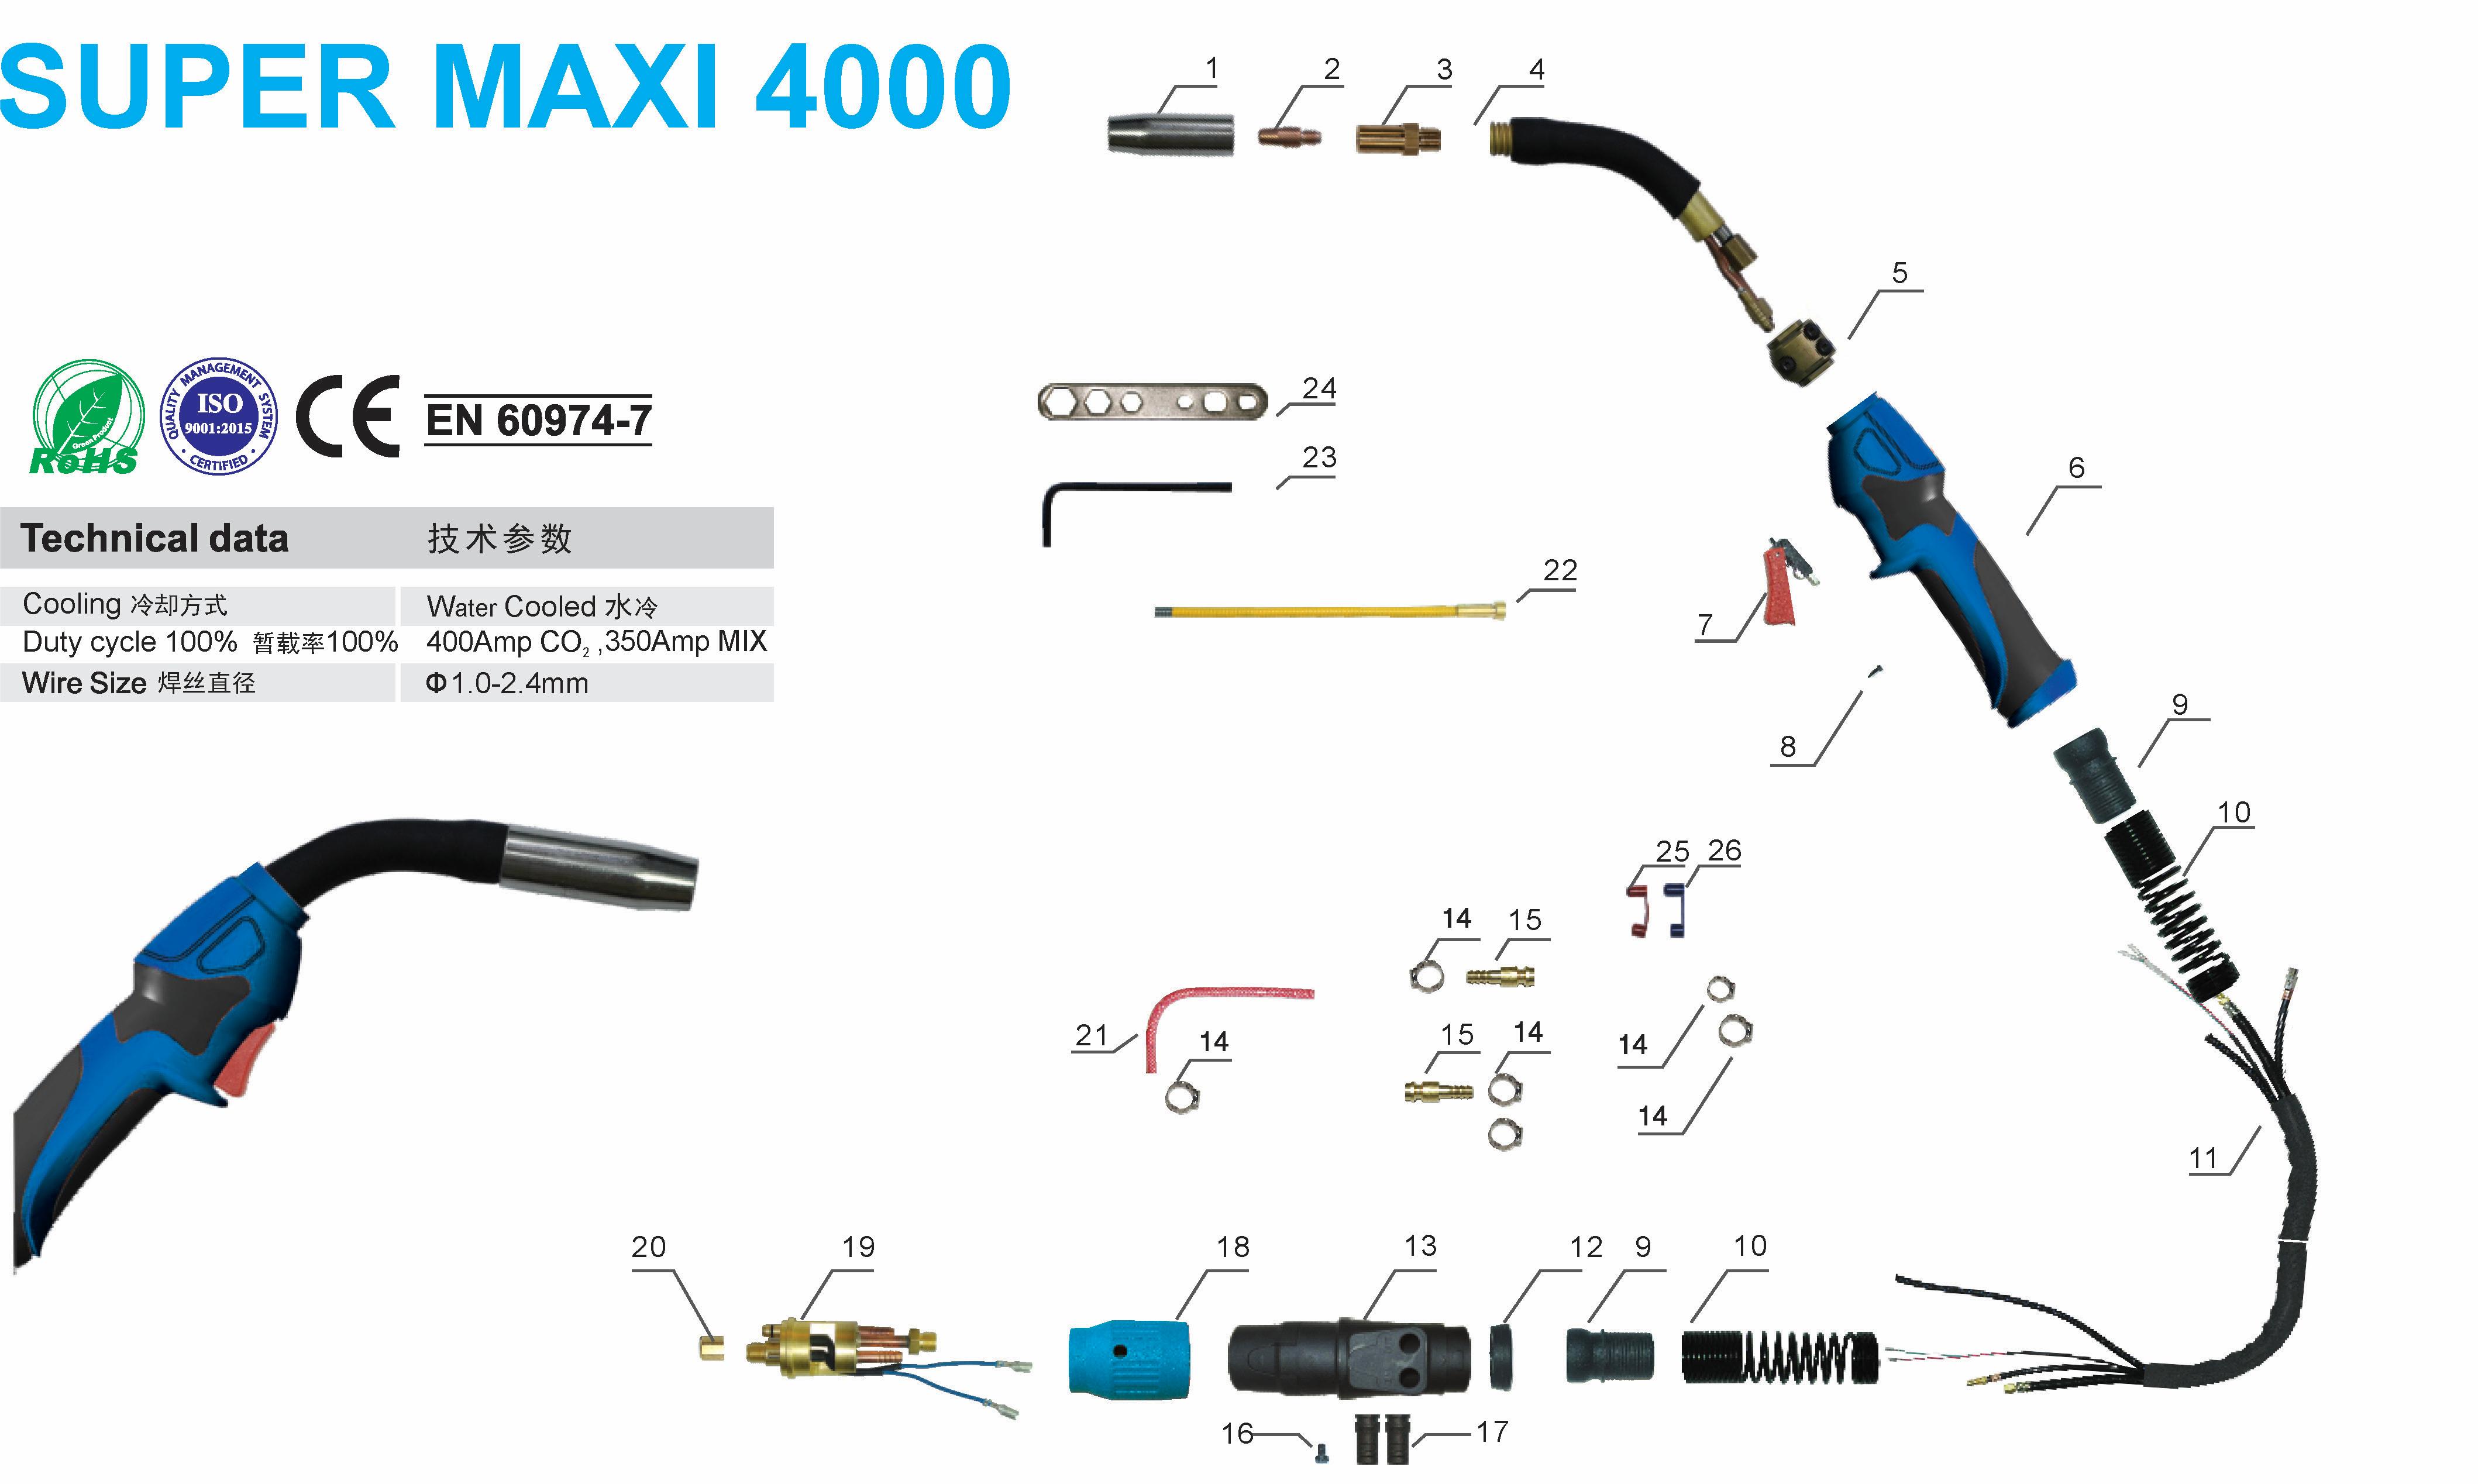 Super Maxi 4000